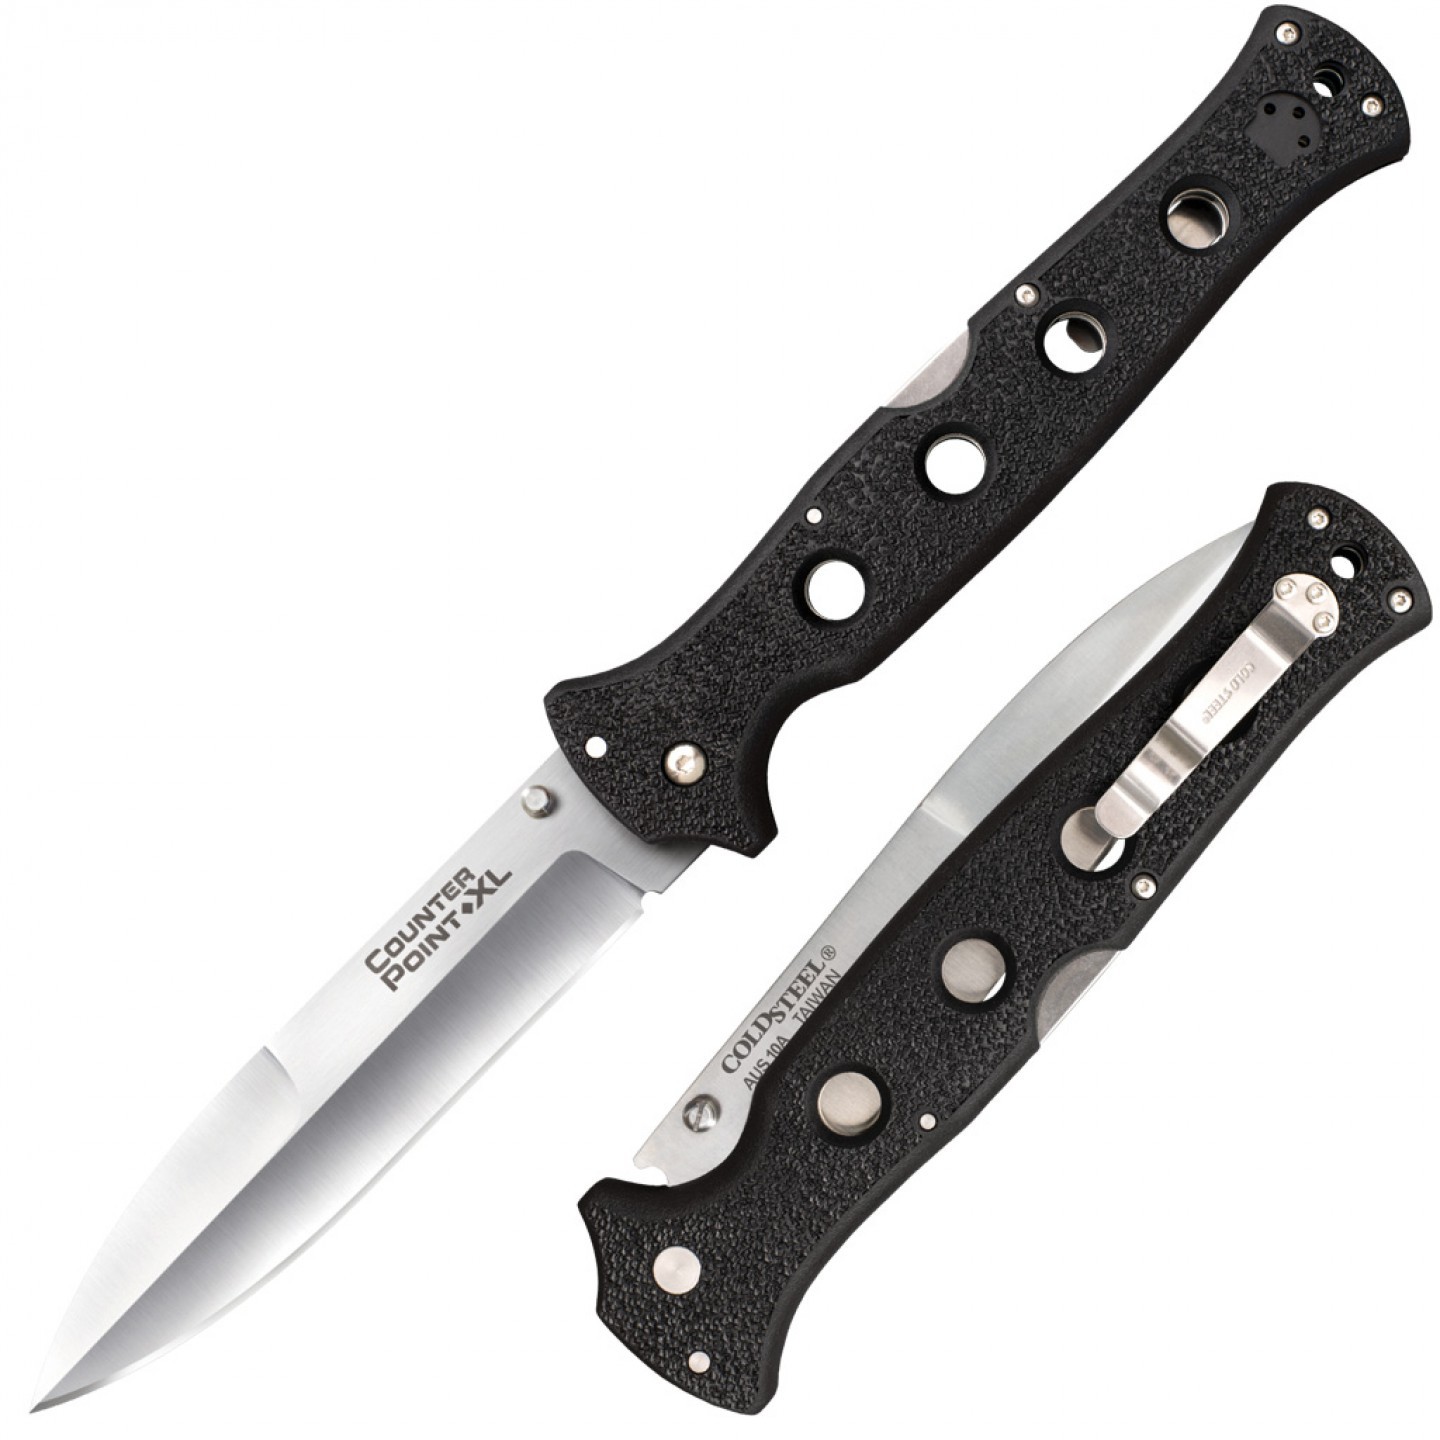 Нож складной Cold Steel Counter Point XL, сталь AUS-10A, рукоять grivory, black складной нож daggerr cinquedea all сталь d2 рукоять g10